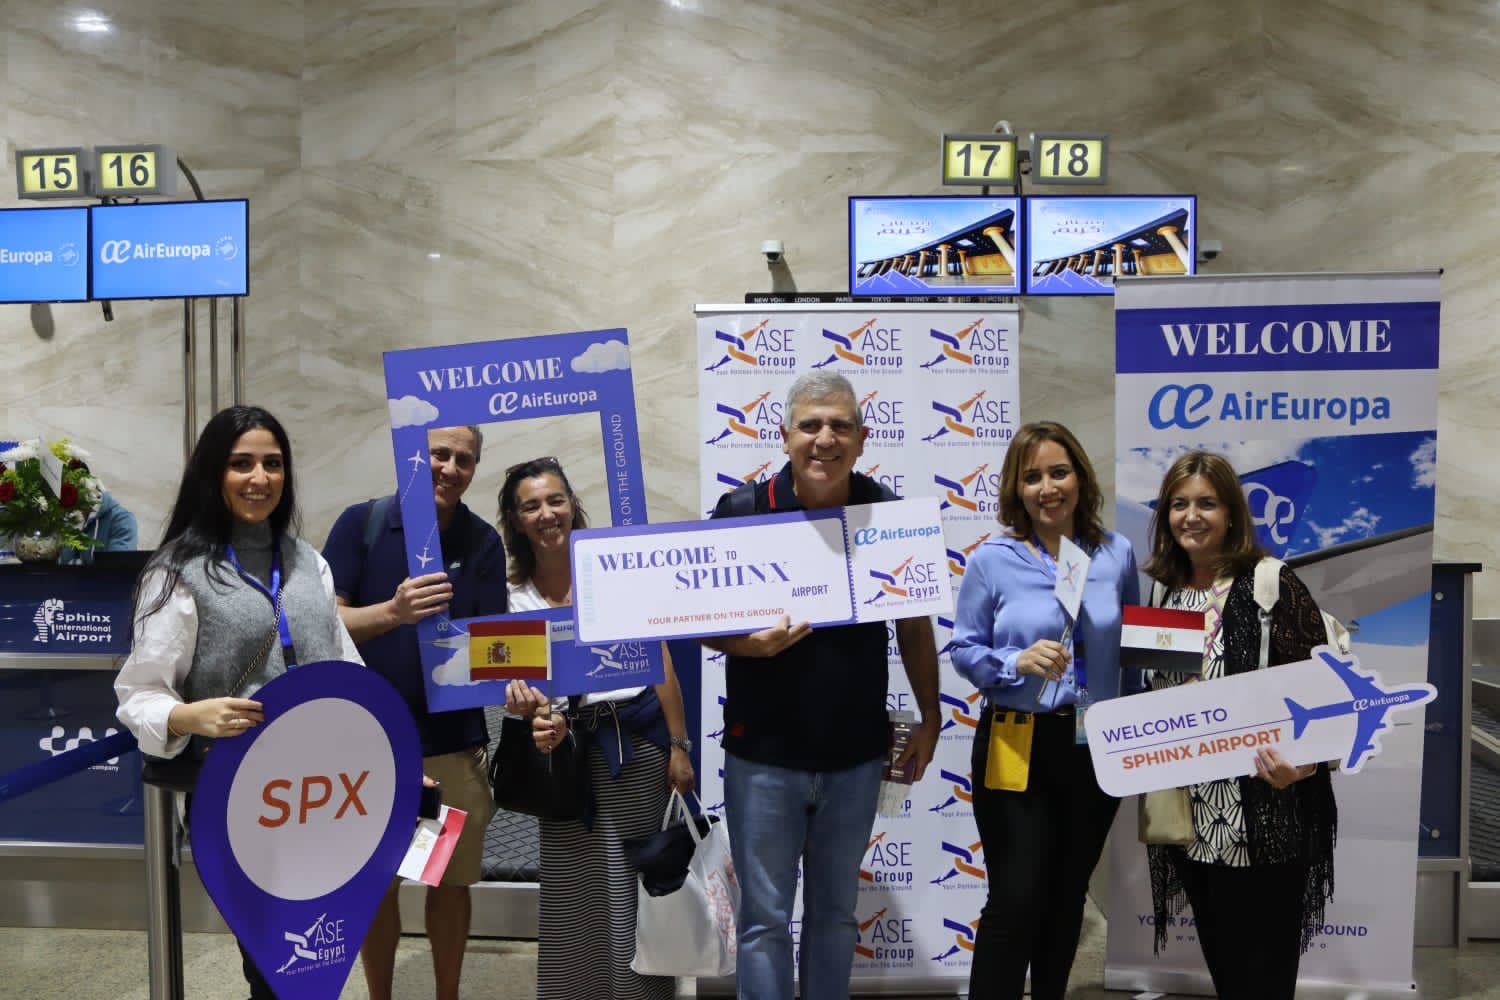 مطار سفنكس الدولي يستقبل أولى رحلات إير أوروبا الإسبانية     (3)